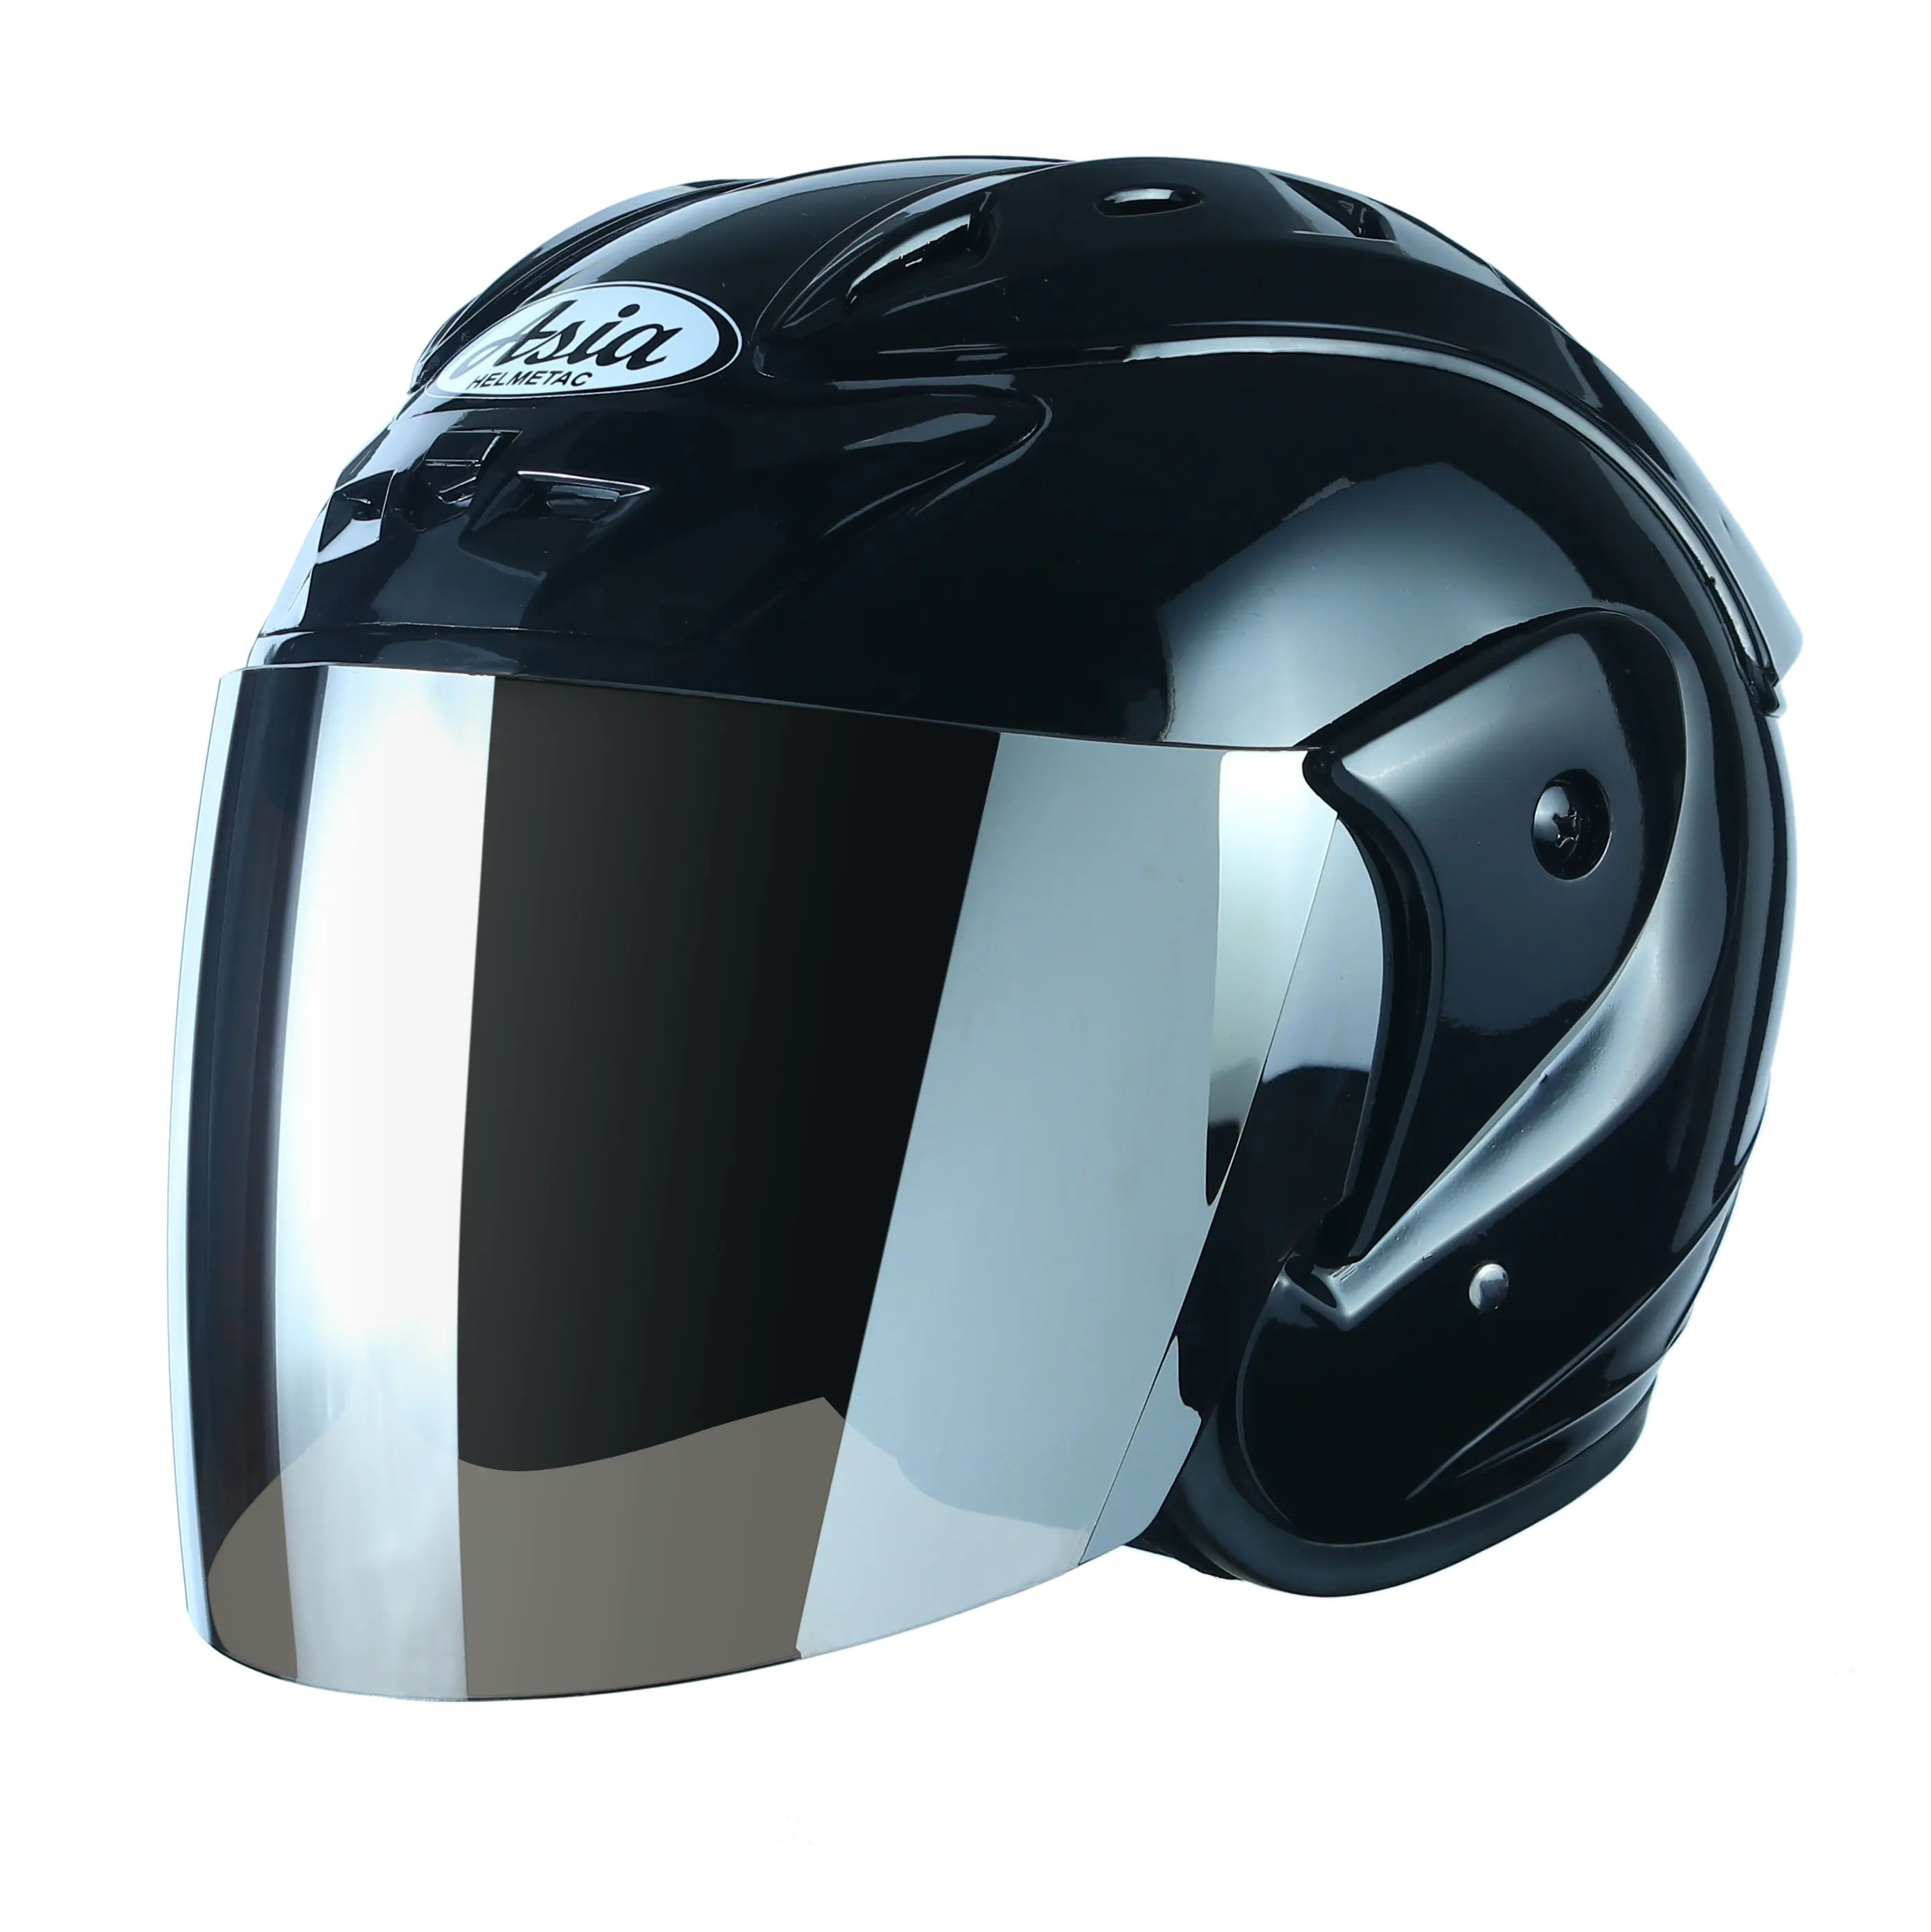 खुला चेहरा मोटरसाइकिल हेलमेट मीट्रिक टन-115 एशिया का छज्जा के साथ उन्नत एबीएस डॉट मानक casco विंटेज मोटर साइकिल हेलमेट के लिए फैक्टरी बिक्री